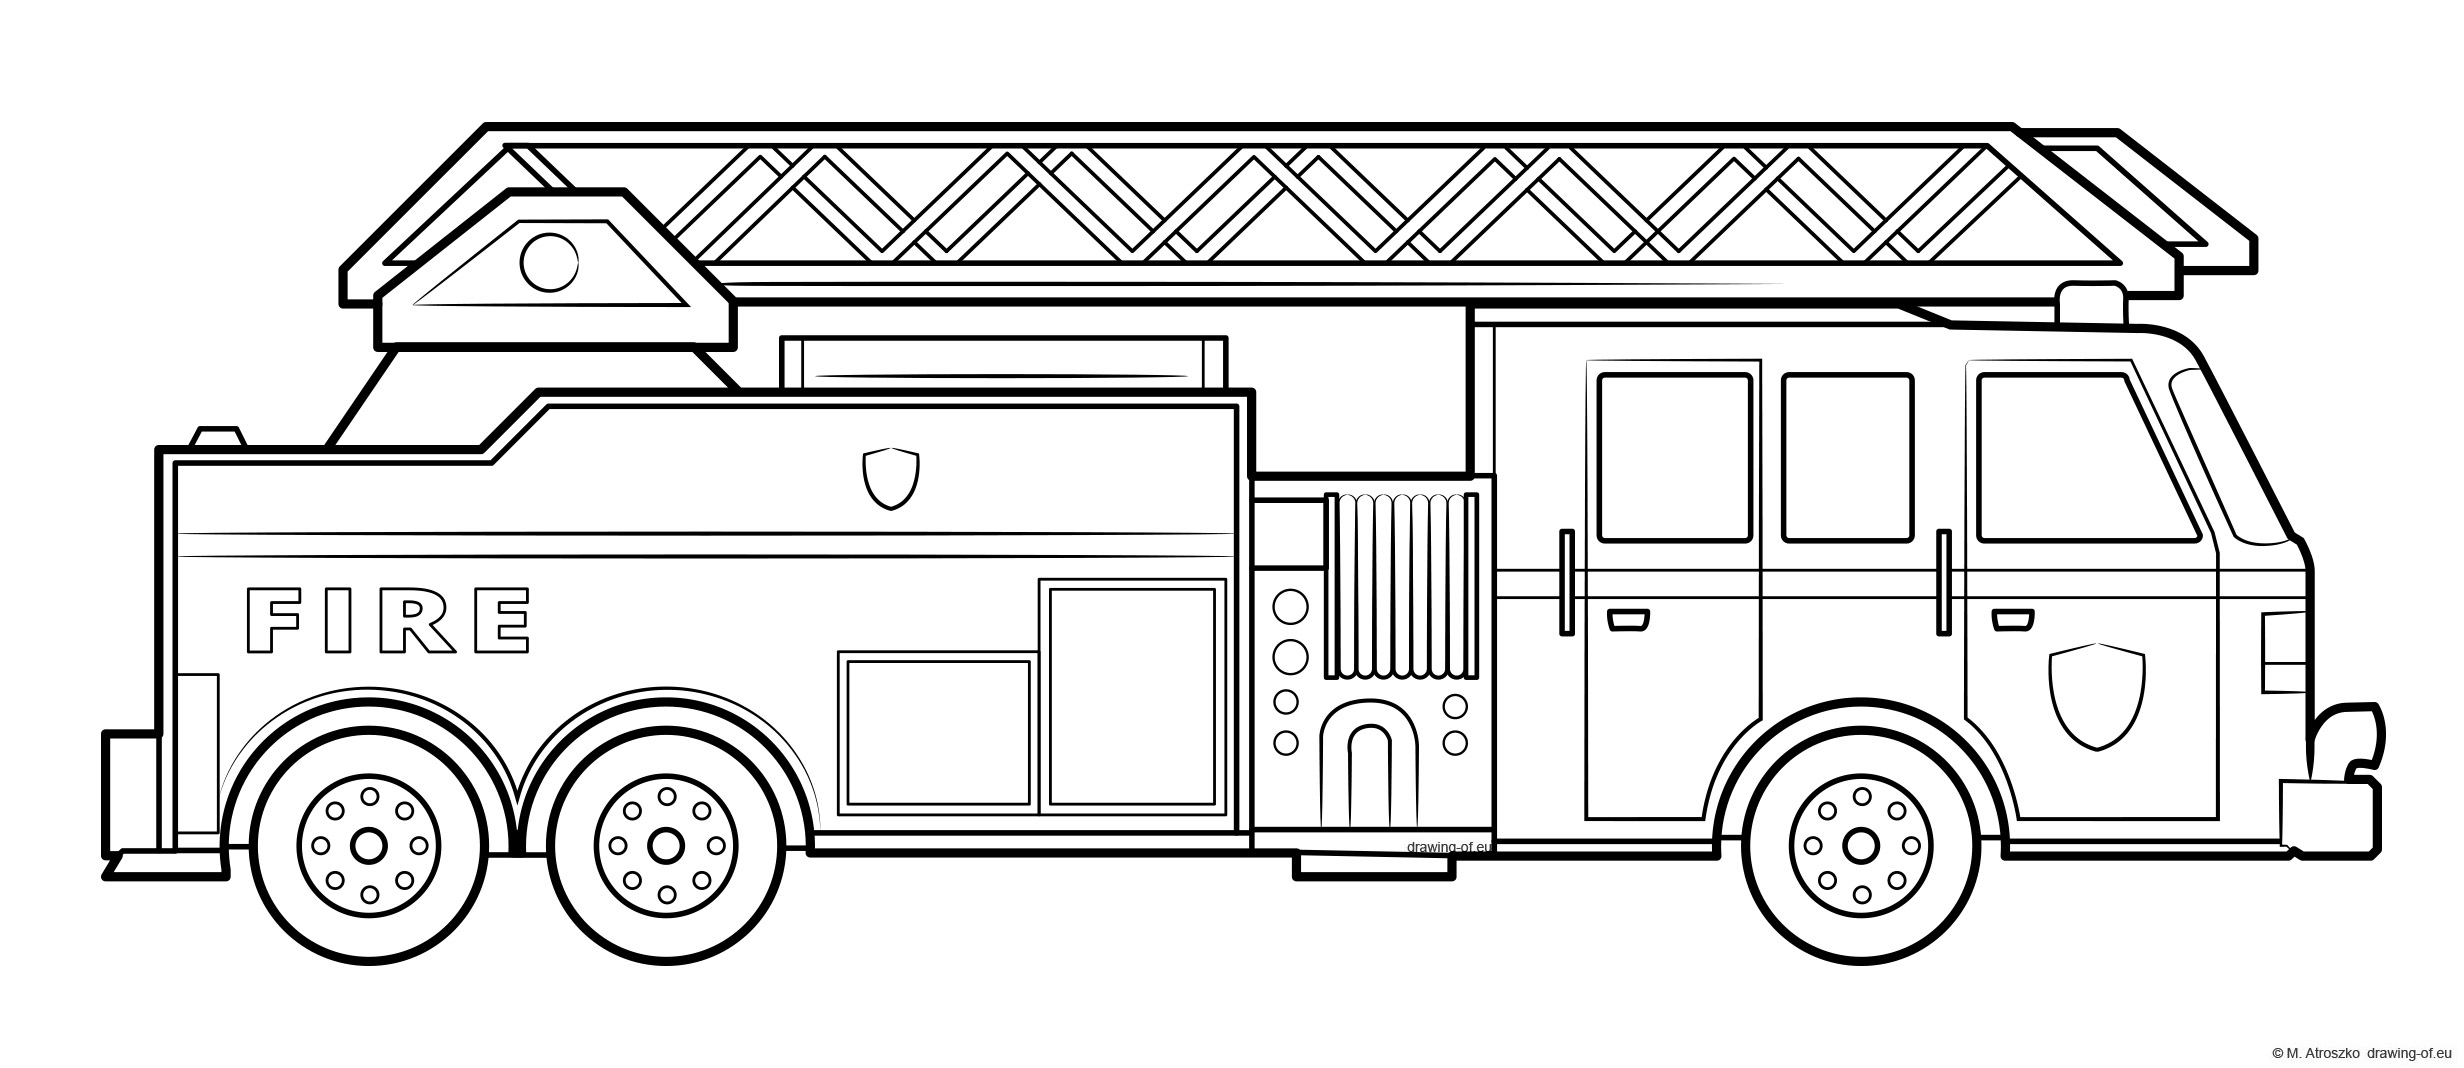 Fire Truck draw